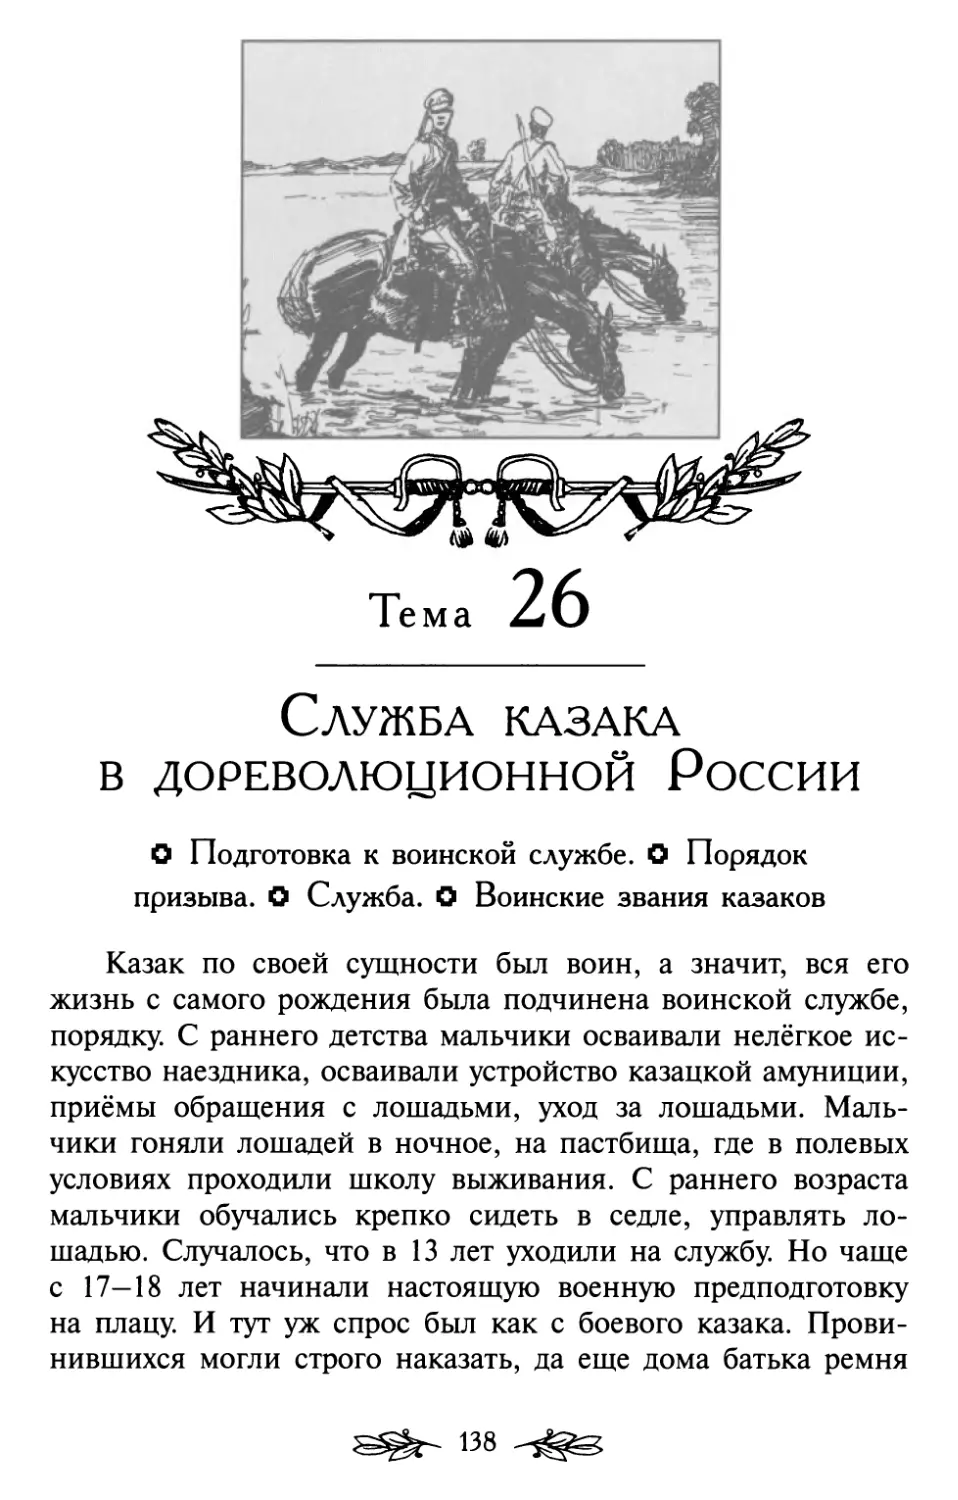 Тема 26. Служба казака в дореволюционной России